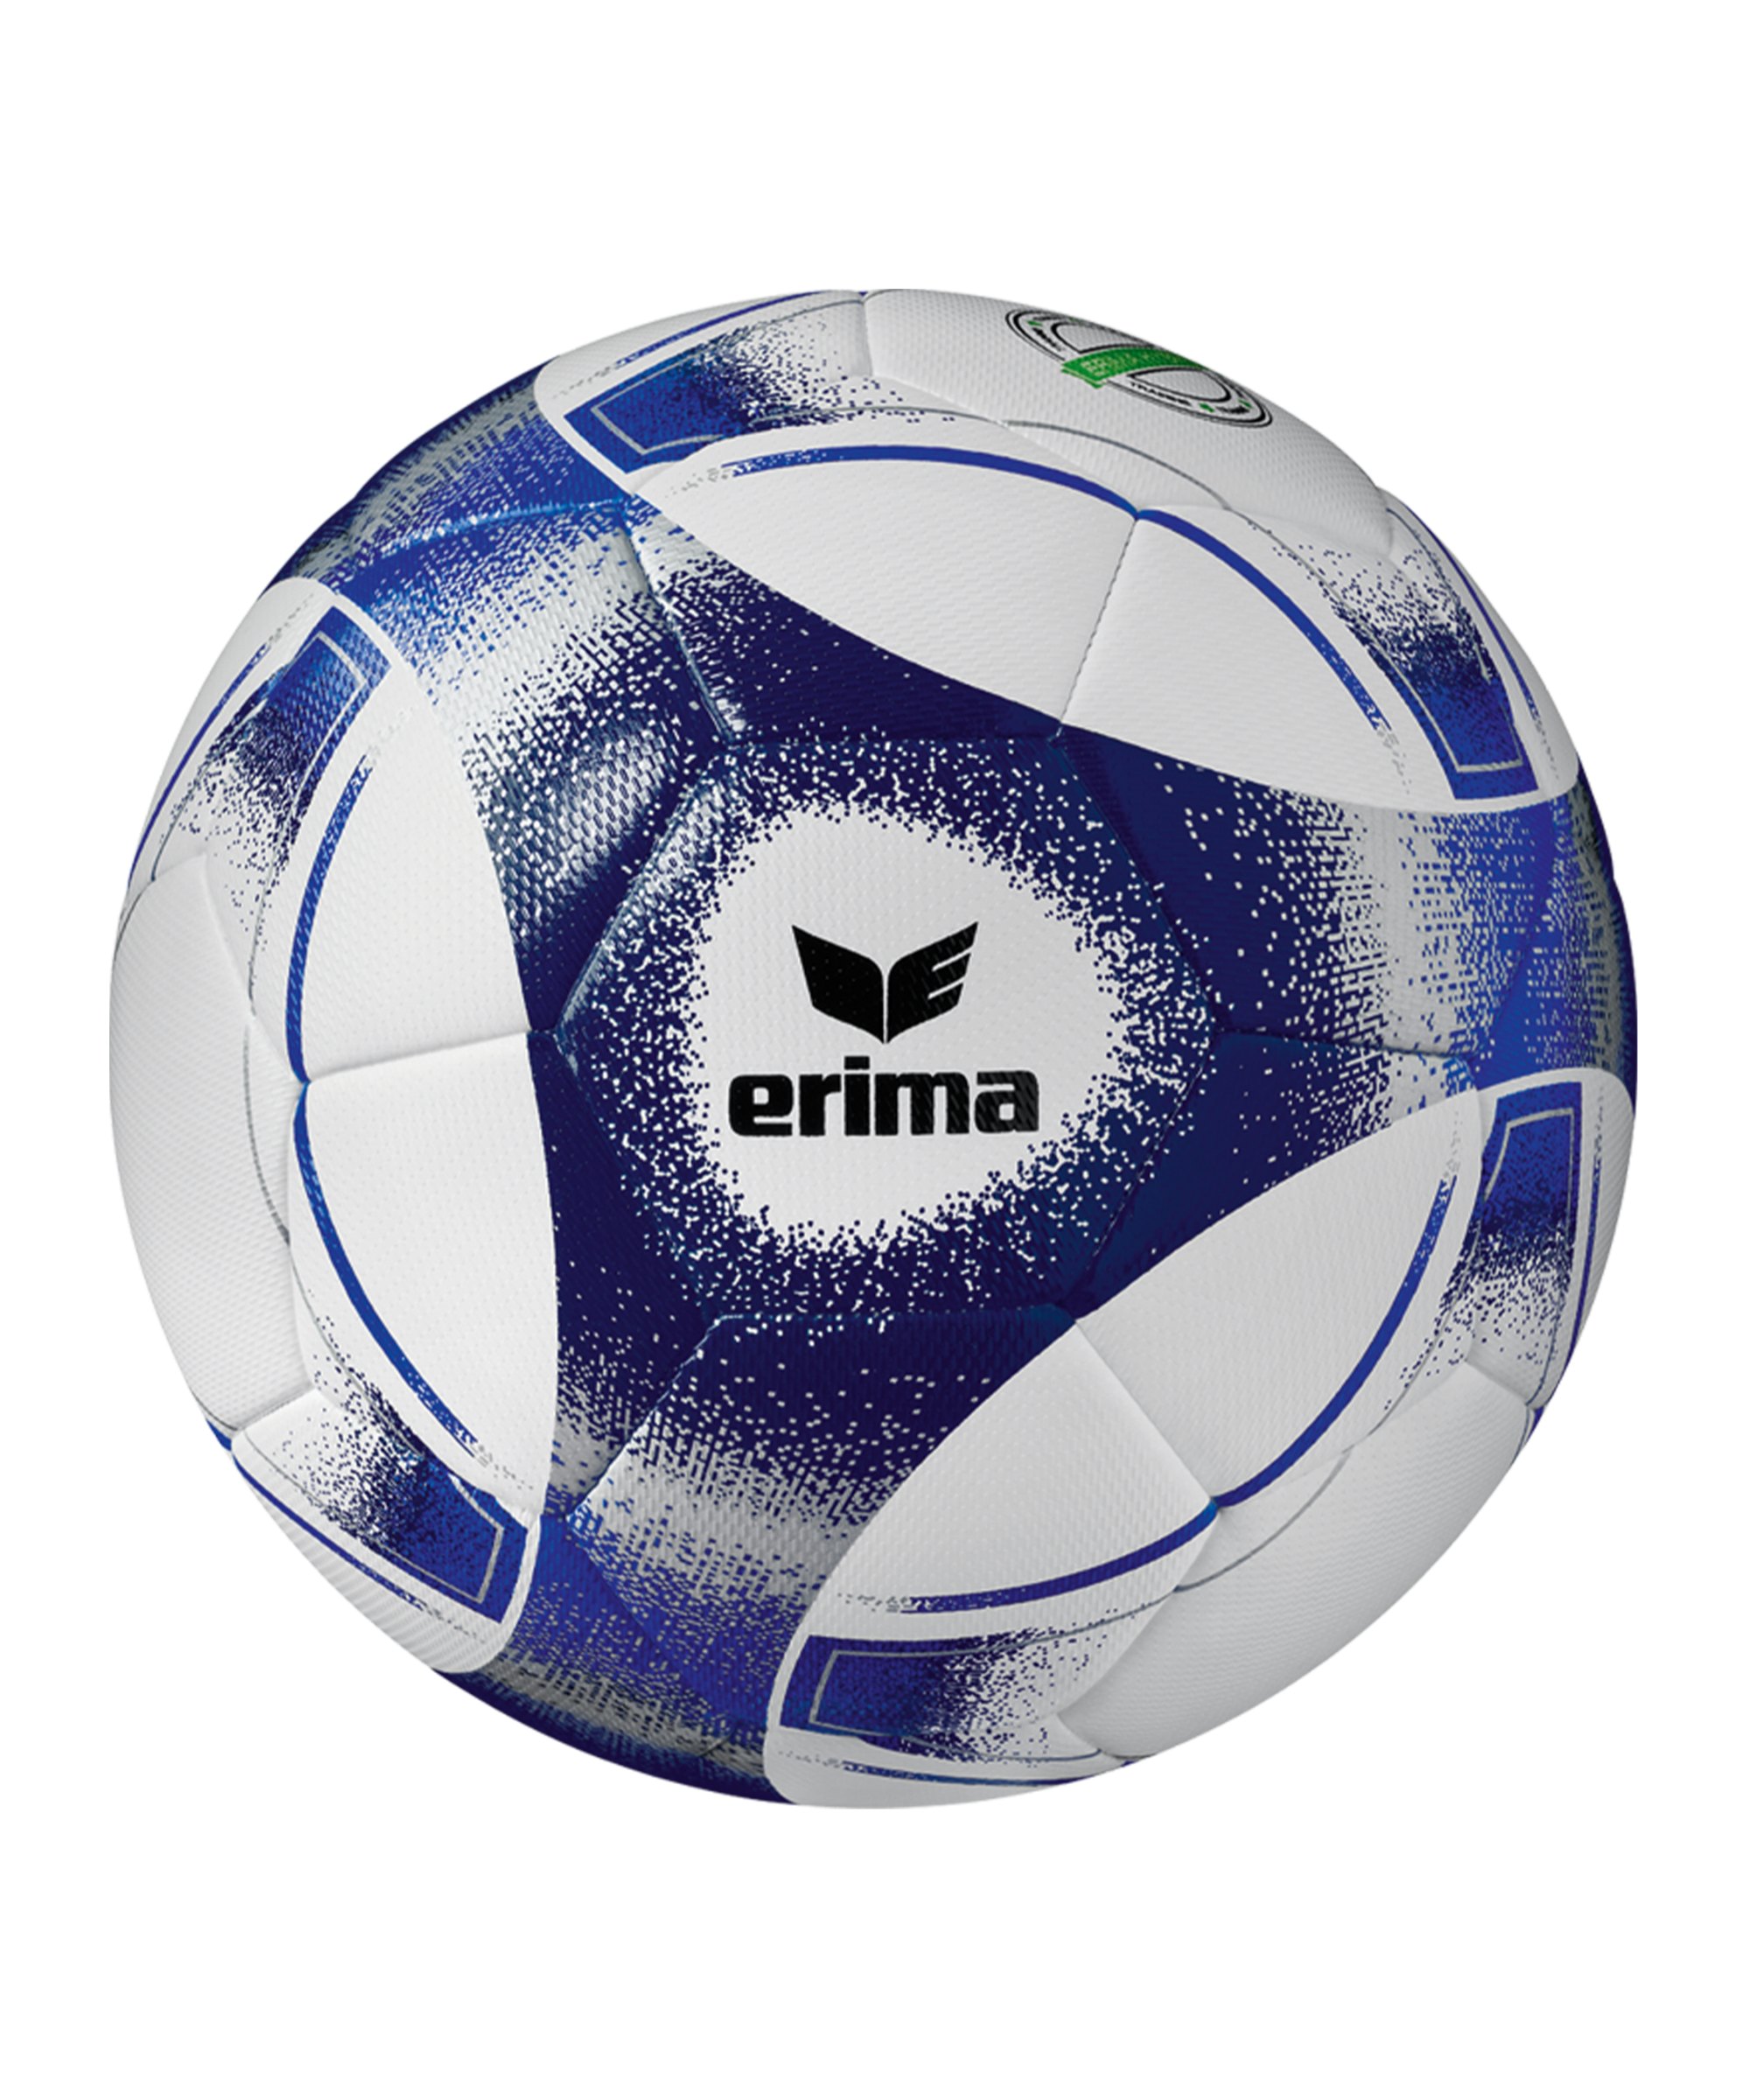 Erima Hybrid 2.0 Trainingsball Blau - blau